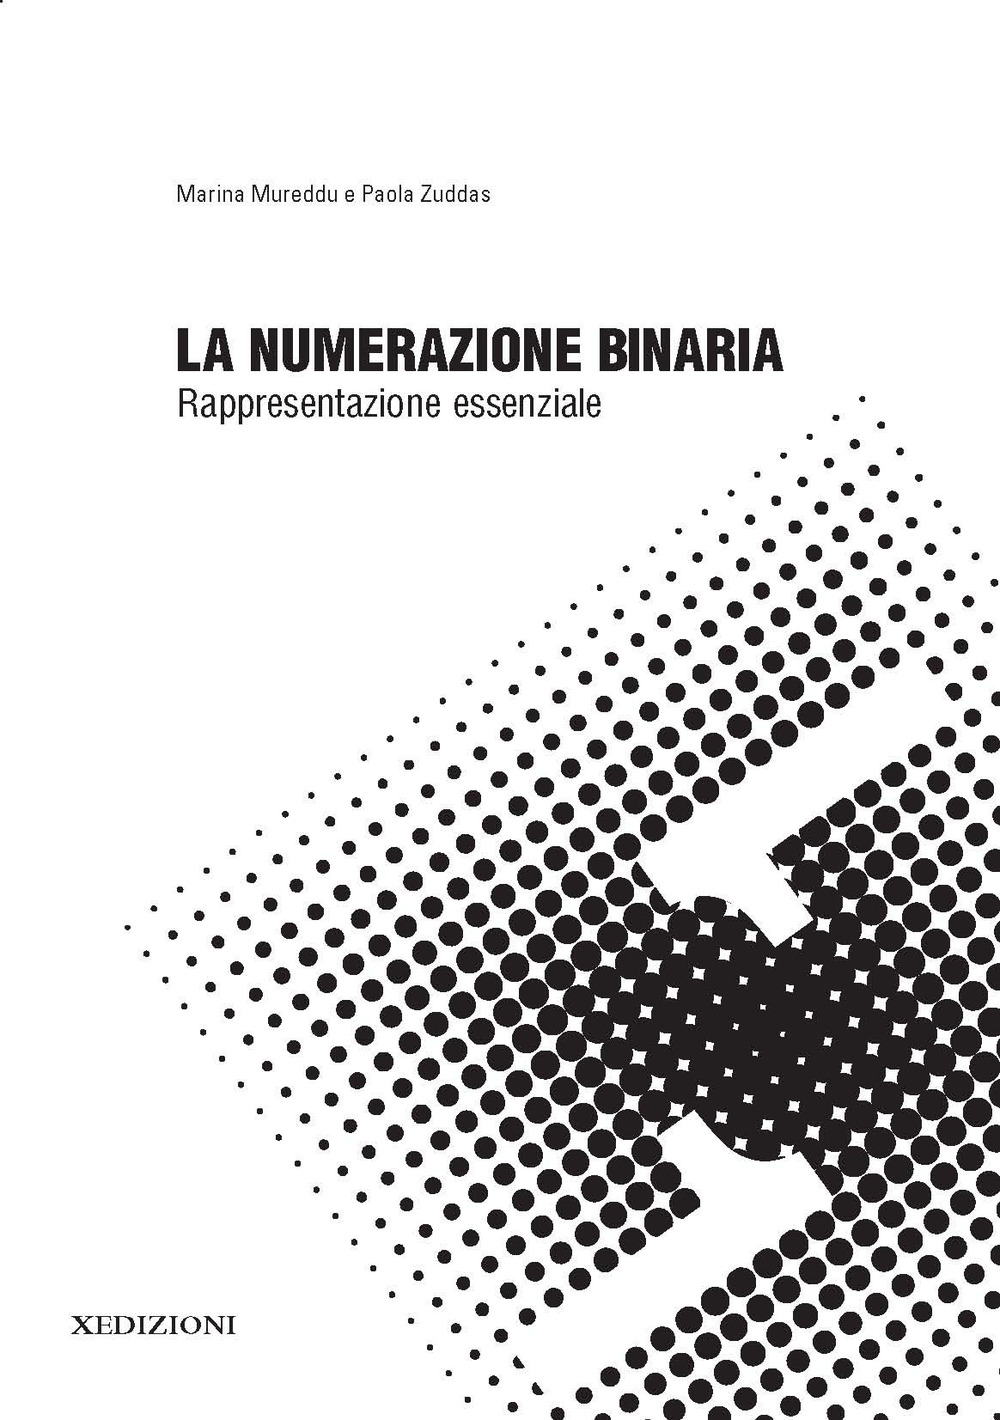 Libri Marina Mureddu / Paola Zuddas - La Numerazione Binaria: Rappresentazione Essenziale NUOVO SIGILLATO, EDIZIONE DEL 20/10/2018 SUBITO DISPONIBILE